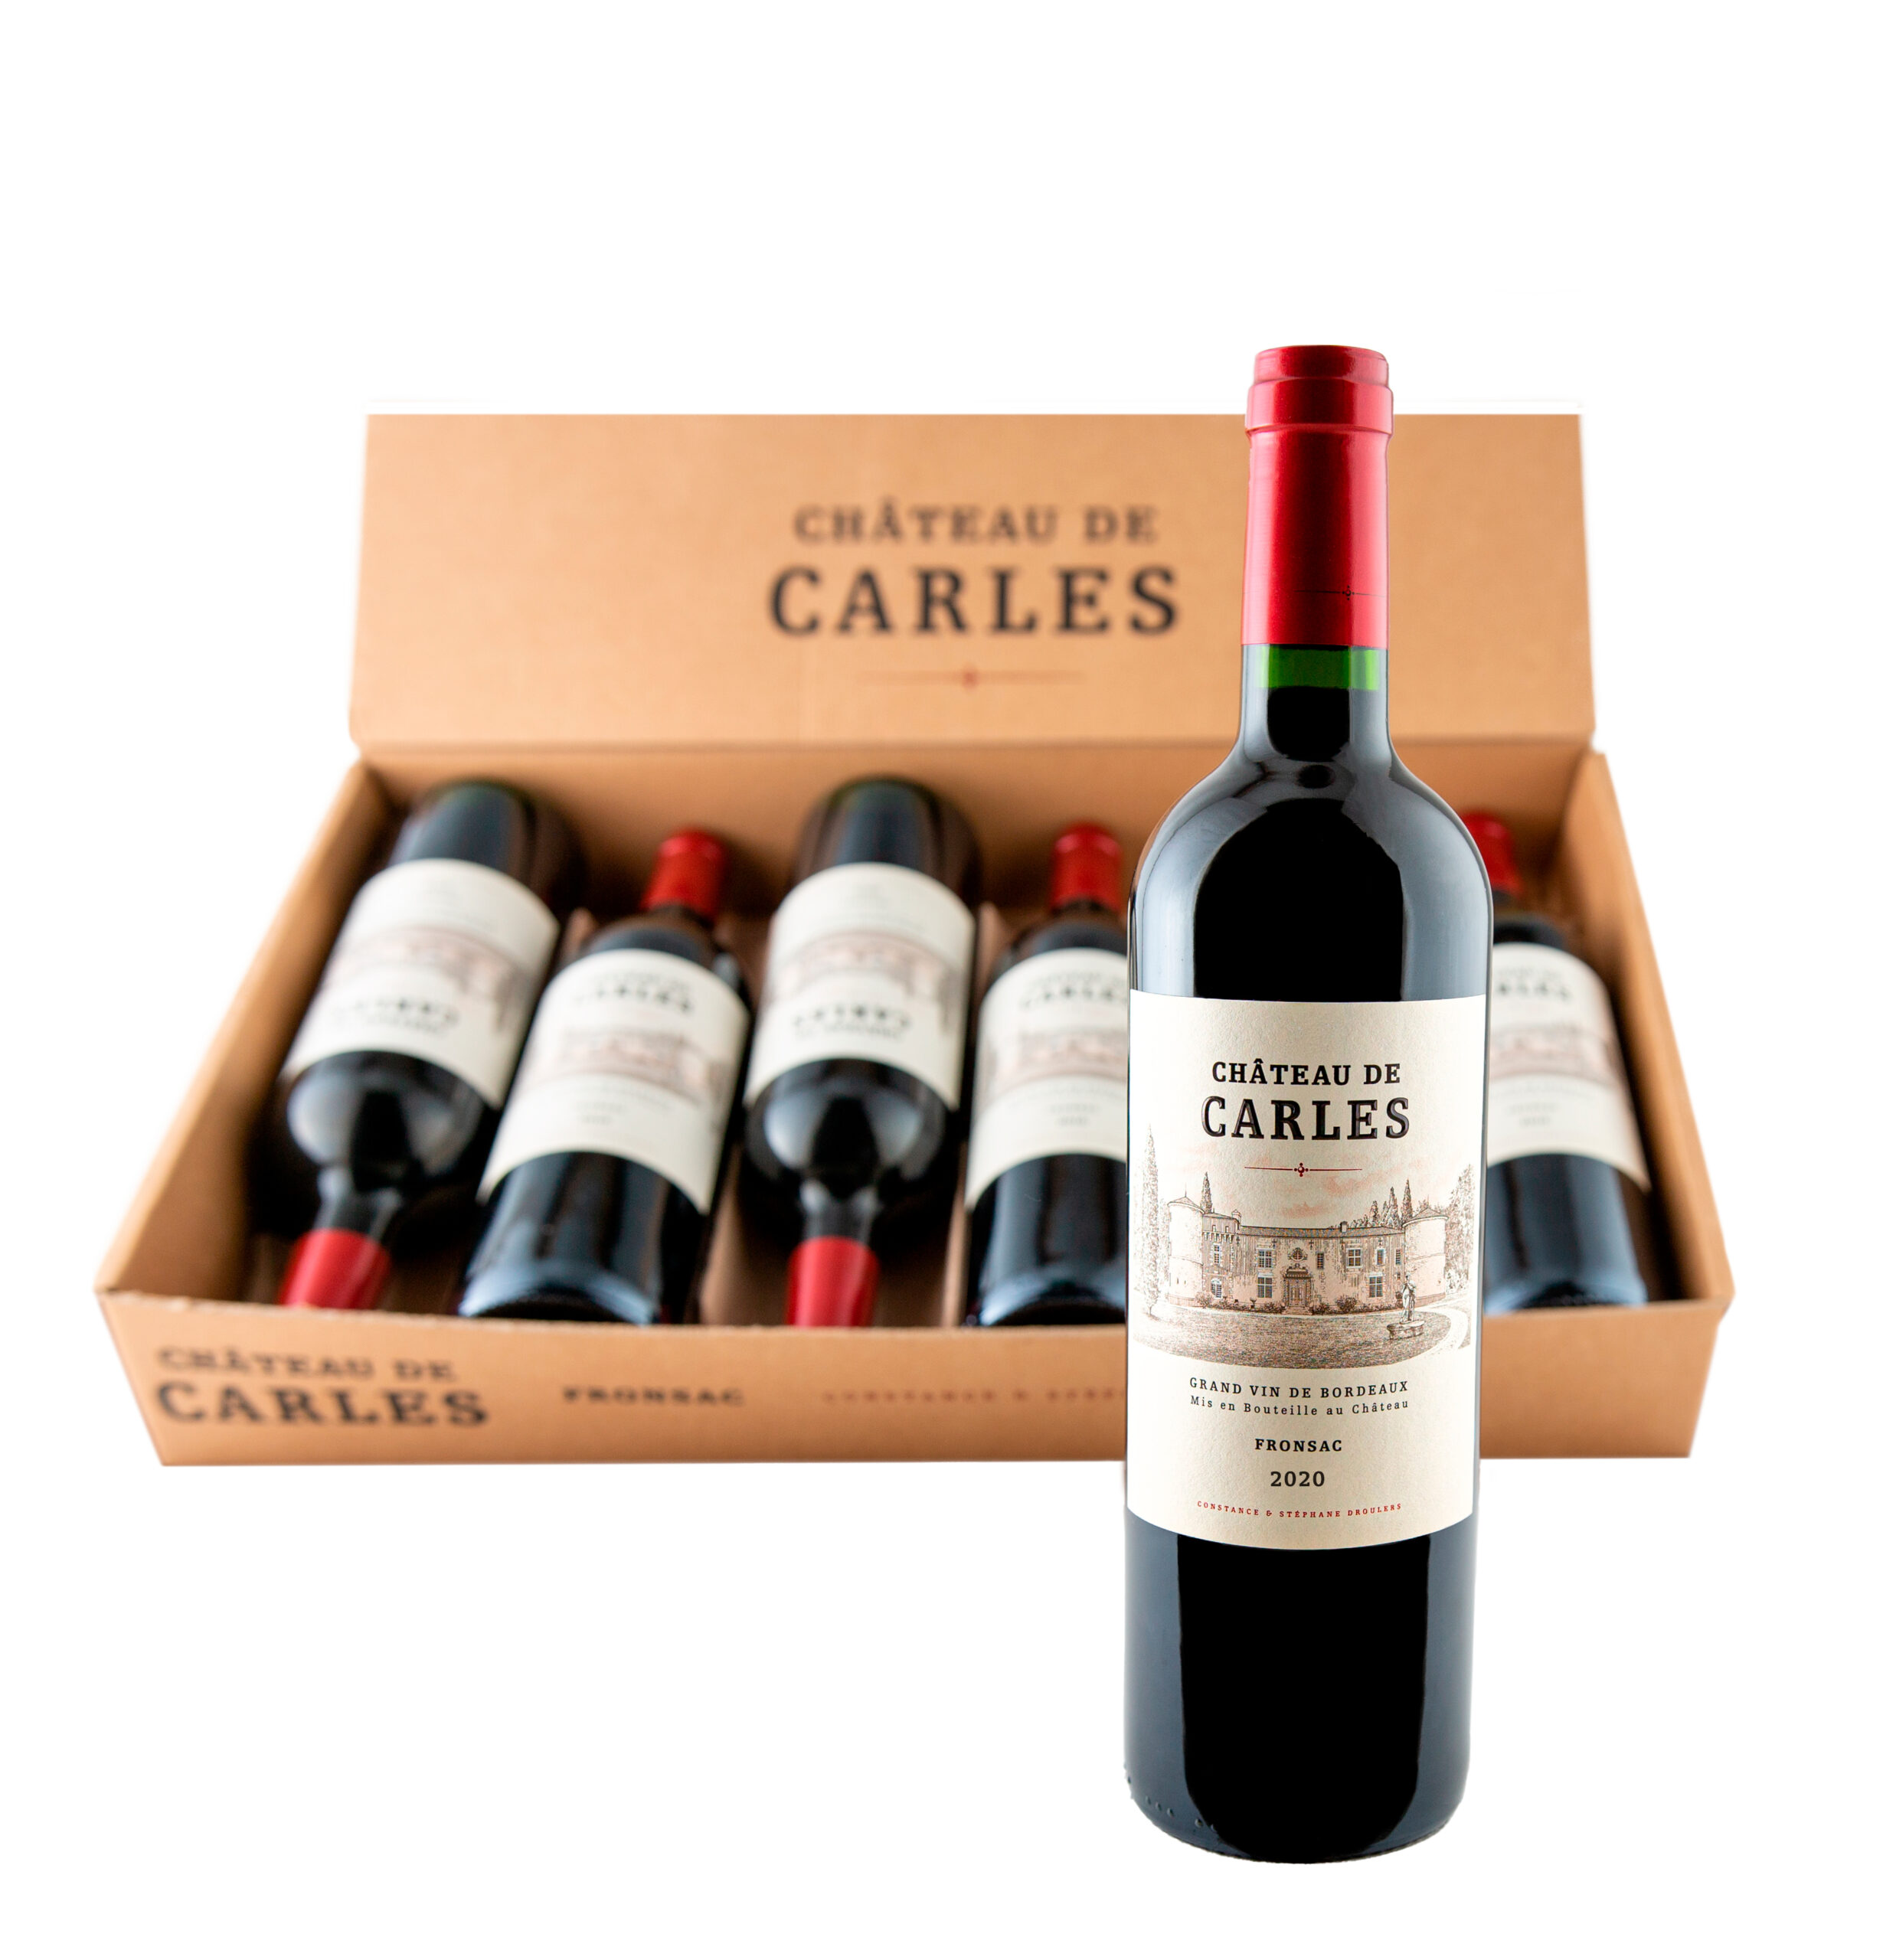 Fiche technique du Château de Carles, appellation Fronsac contrôlée, vin  rouge du Bordelais. Code SAQ: 11378439